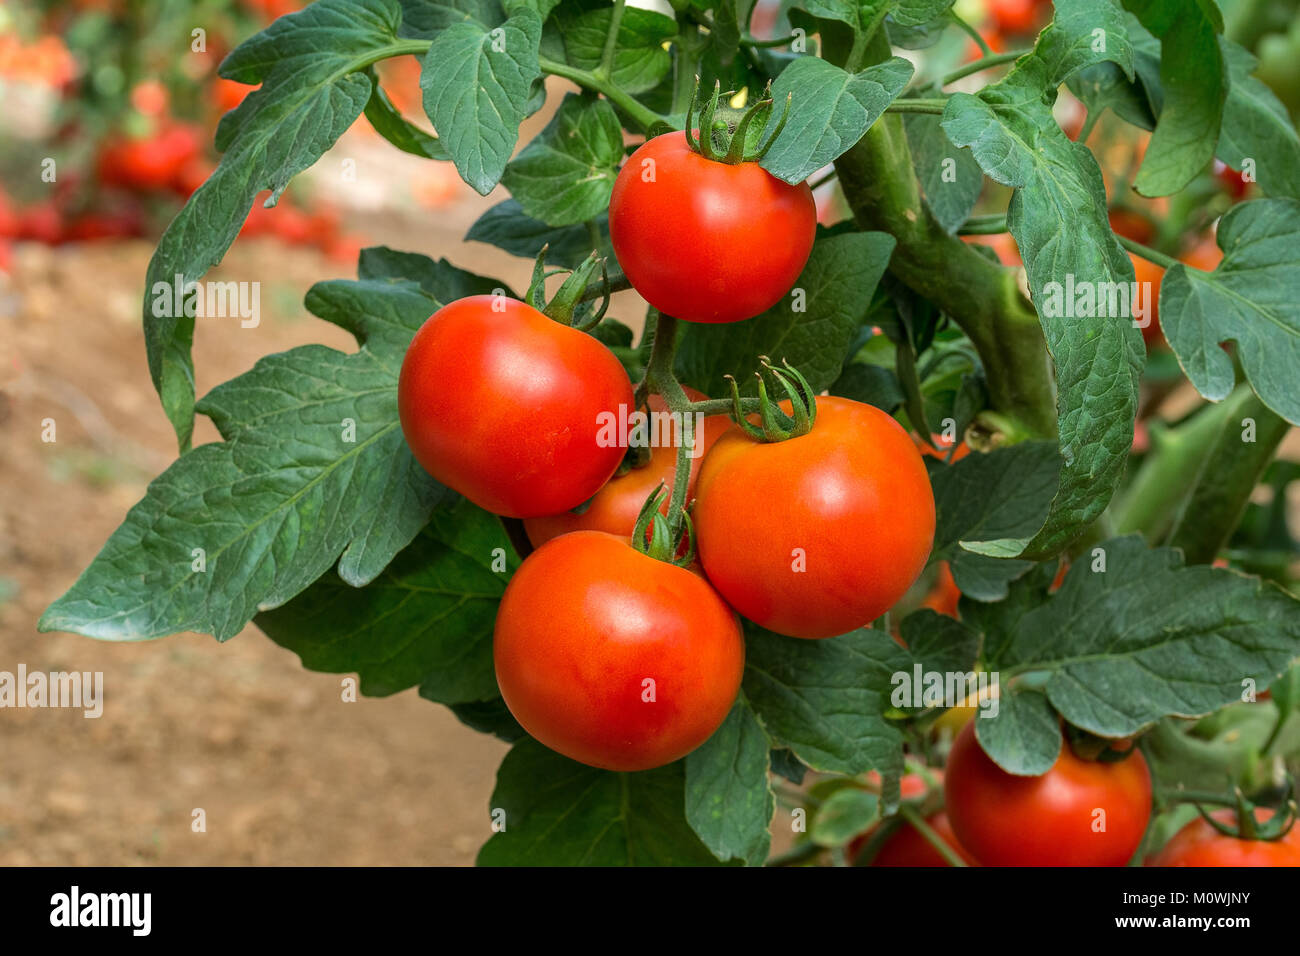 Pomodoro rosso tipo di carni bovine ibrido F1 è indeterminato in una plastica Foto Stock